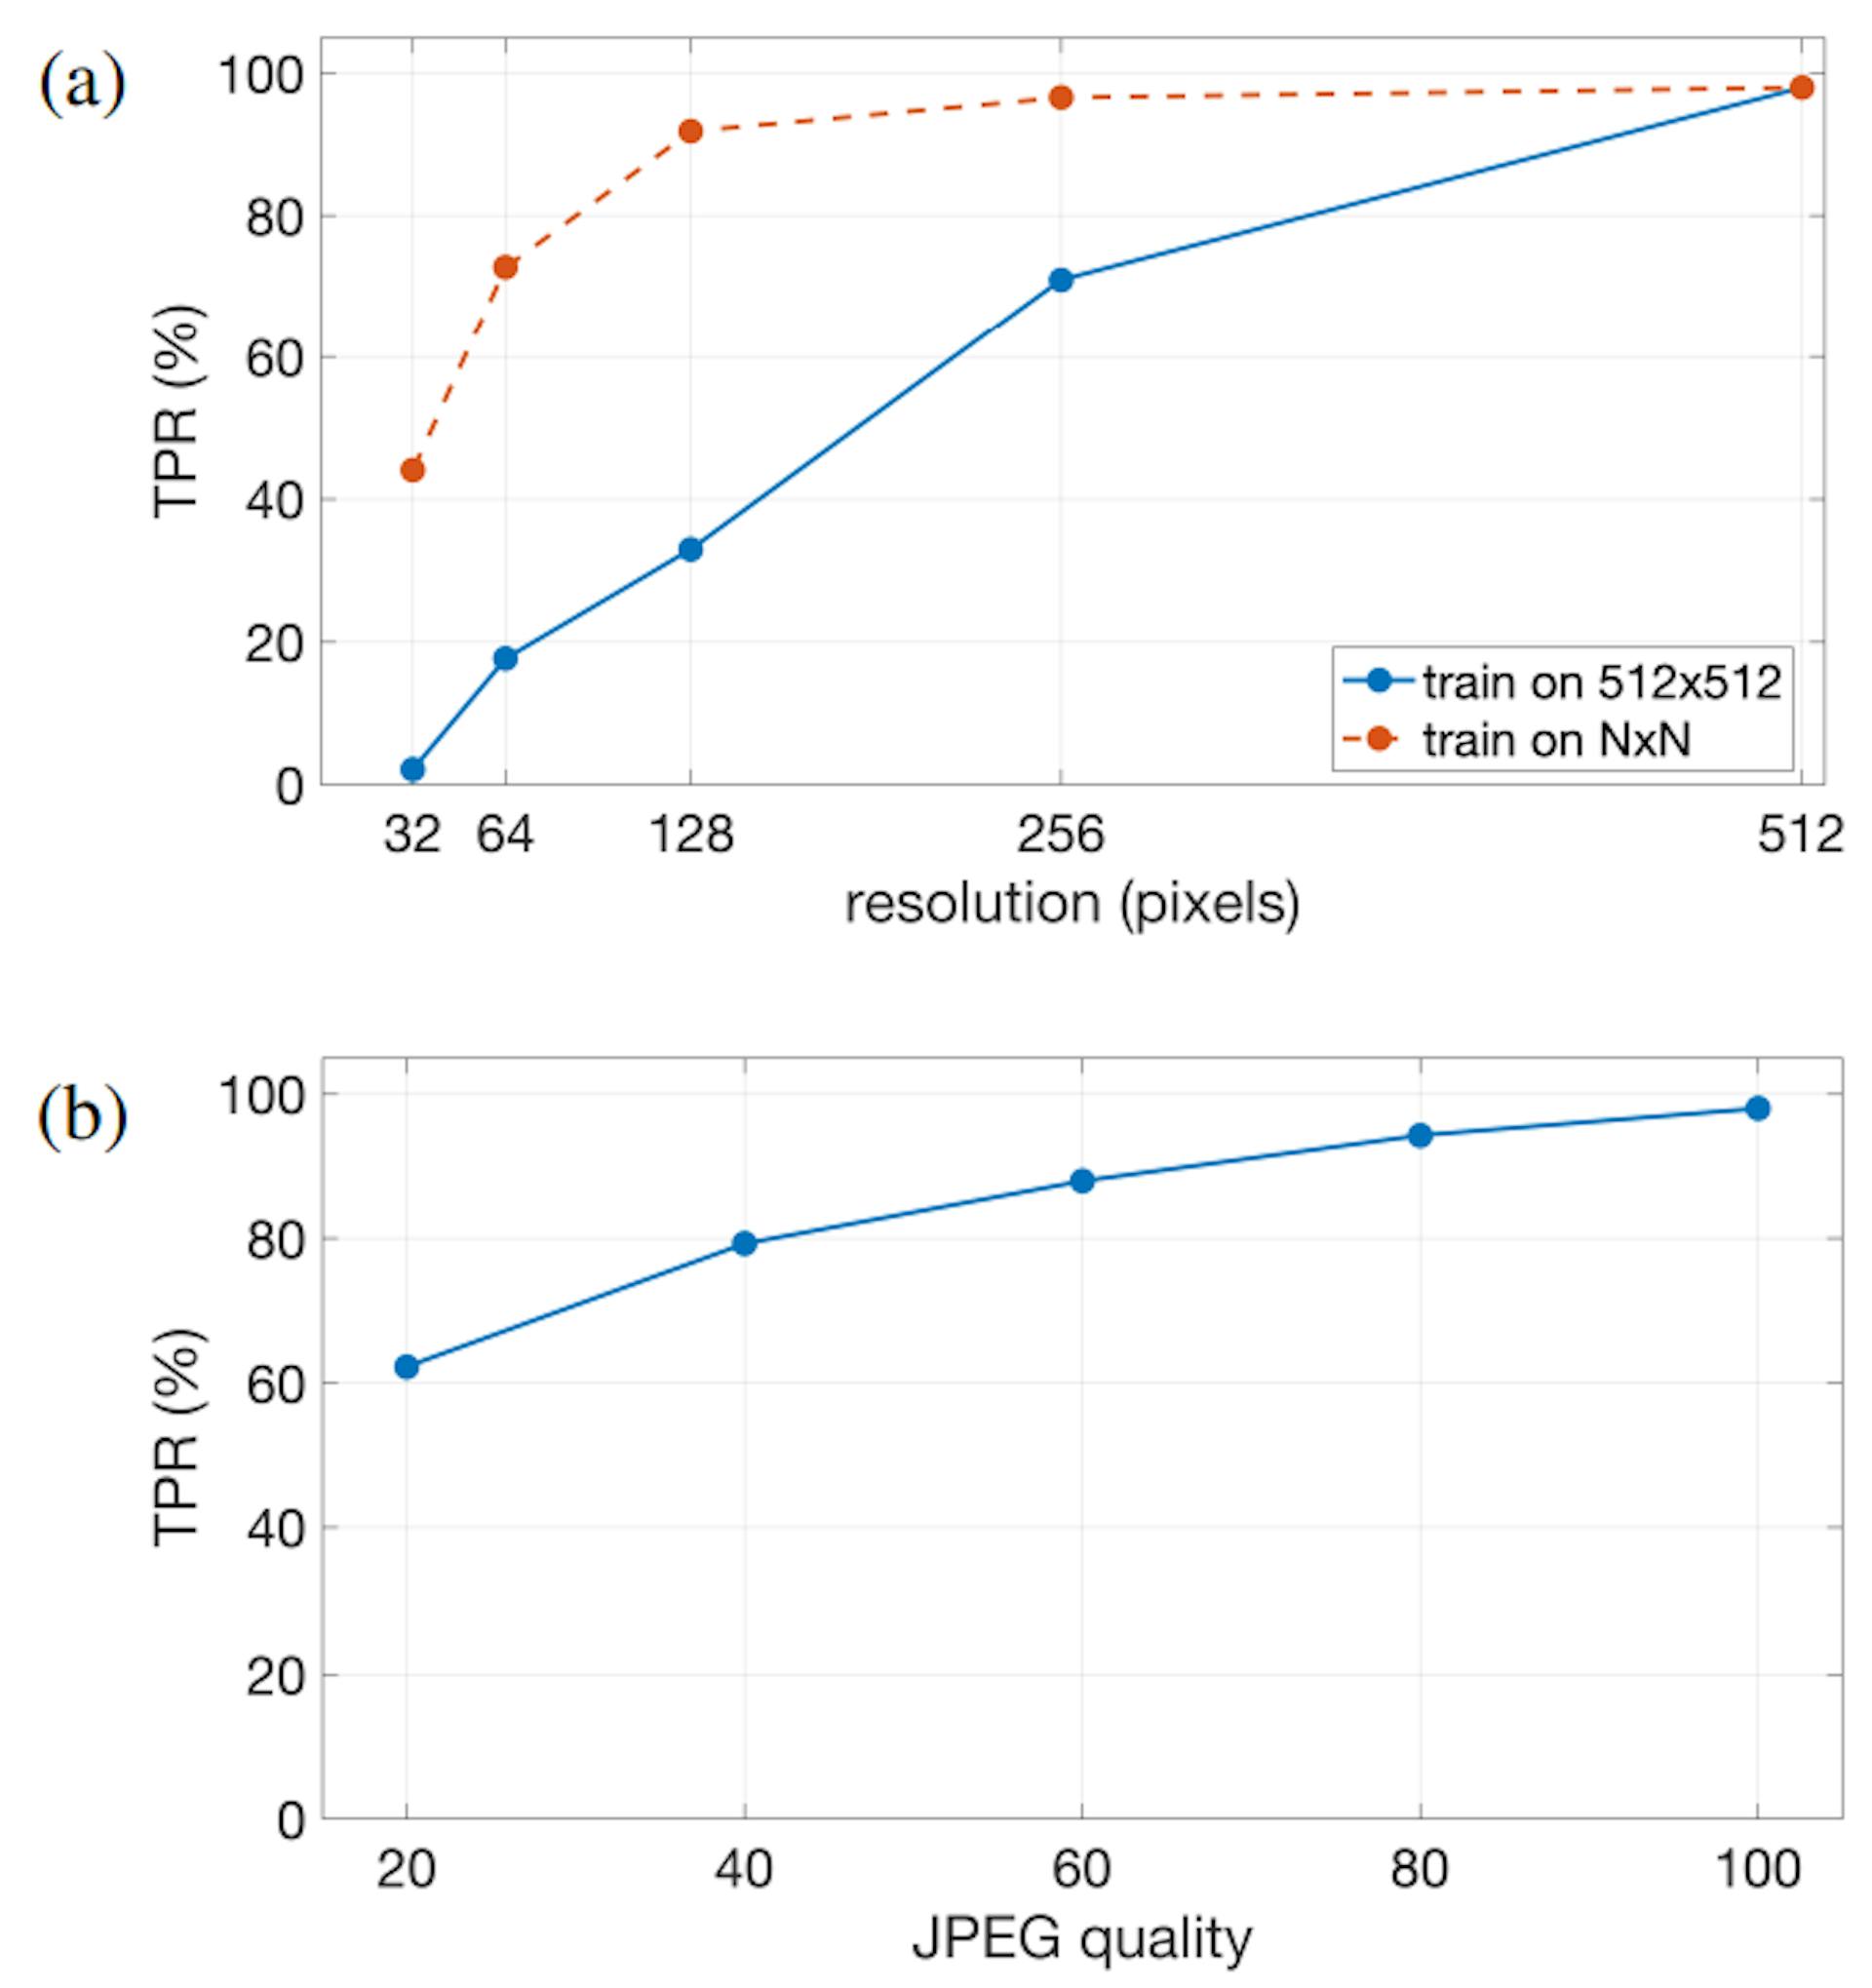 图 3. 正确分类 AI 生成人脸的真正率 (TPR)（固定 FPR 为 0.5%）是以下因素的函数：(a) 分辨率，其中模型在 512 × 512 图像上进行训练并针对不同分辨率进行评估（实线蓝色），并在单一分辨率 N ×N 上进行训练和评估（虚线红色）；(b) JPEG 质量，其中模型在未压缩图像和一系列 JPEG 压缩图像上进行训练，并针对 20（最低）到 100（最高）之间的 JPEG 质量进行评估。